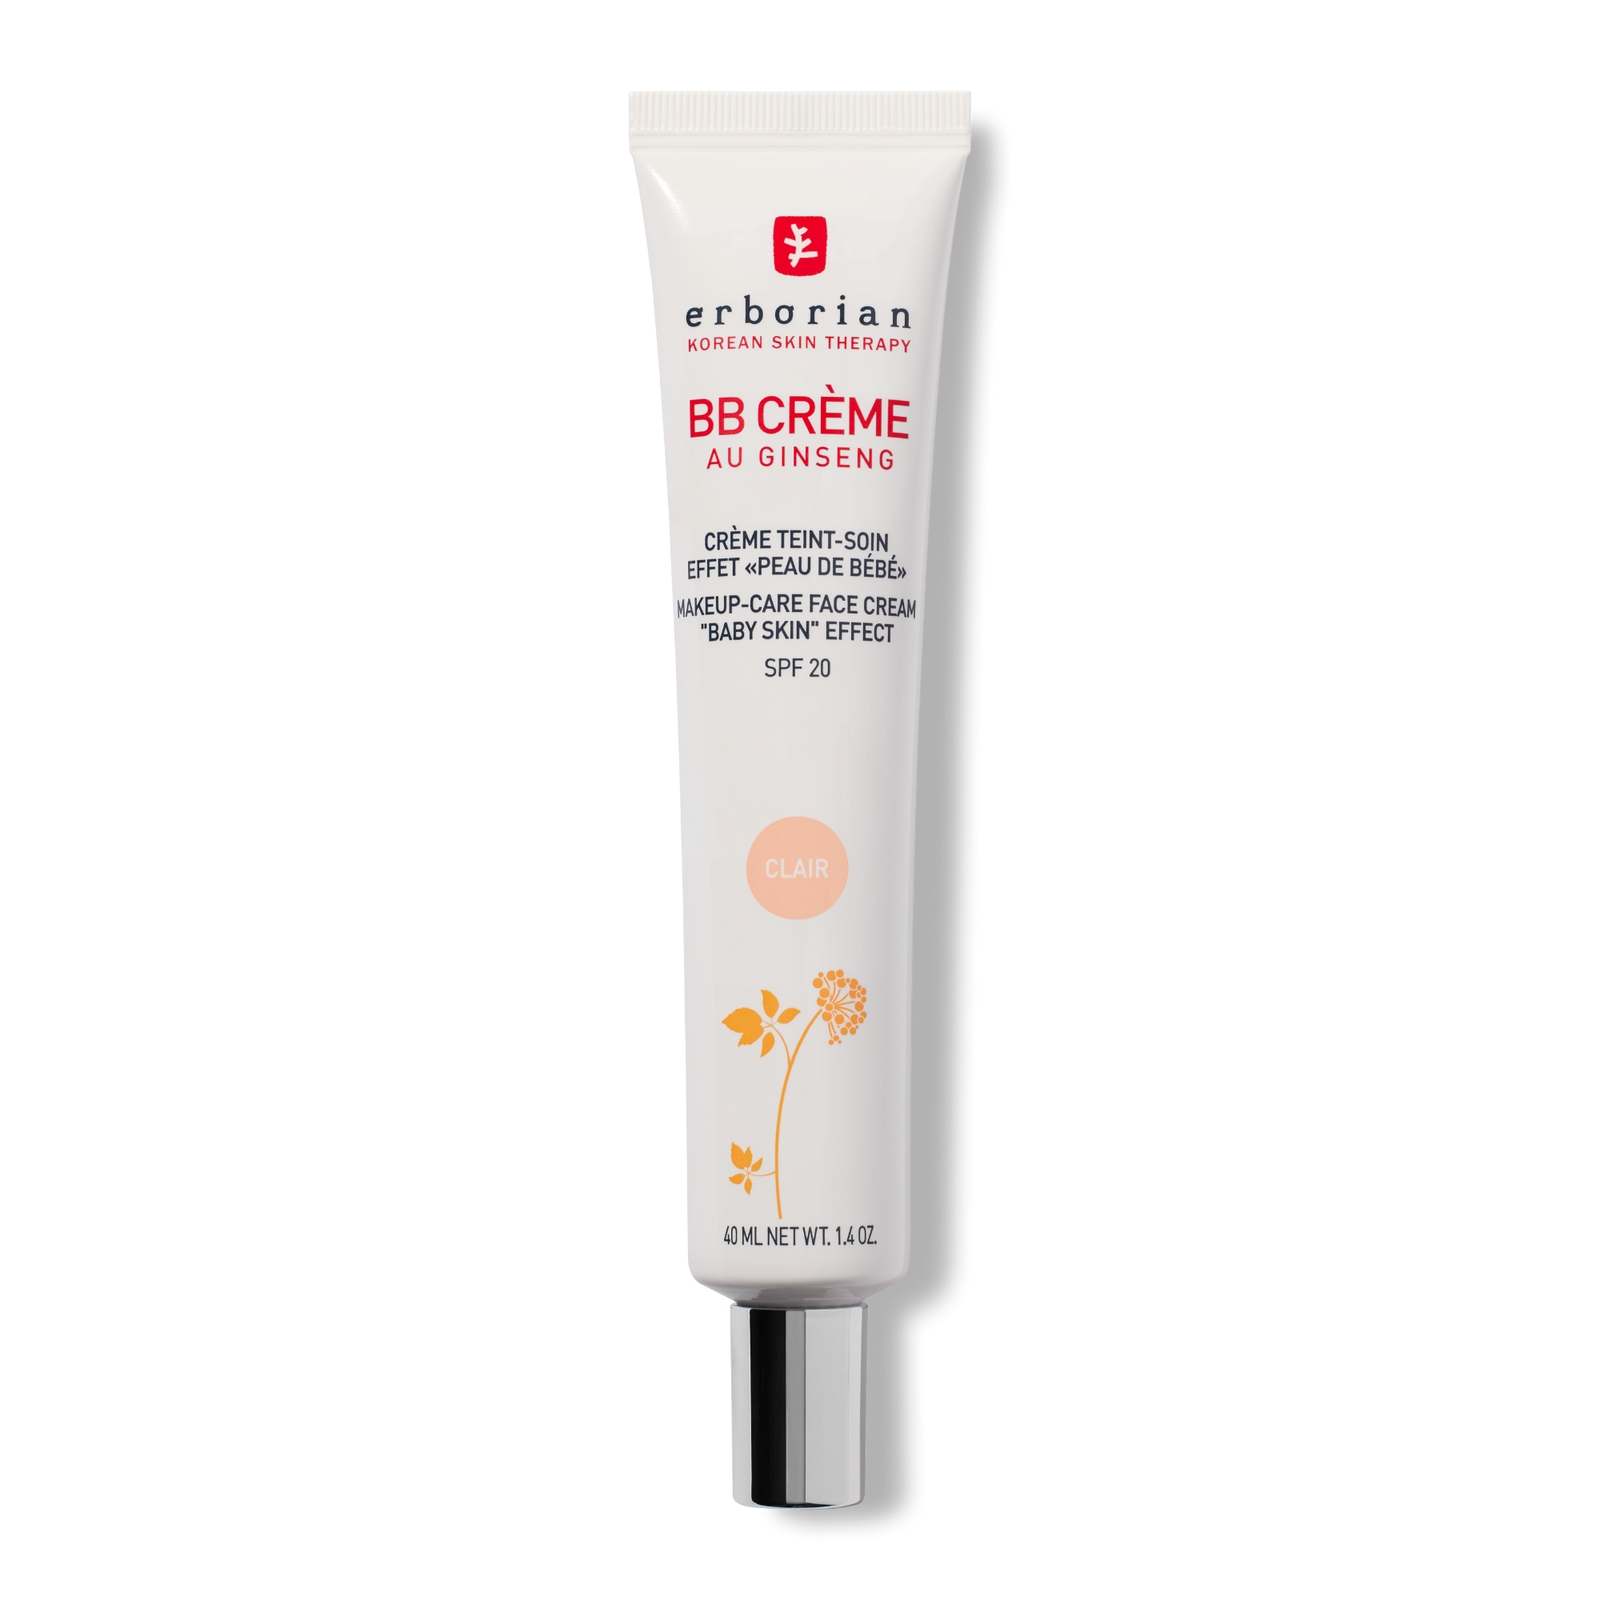 BB Cream 40ml - Base de maquillaje hidratante de cobertura media con FPS20 para piel irregular (Varios tonos) - Clair